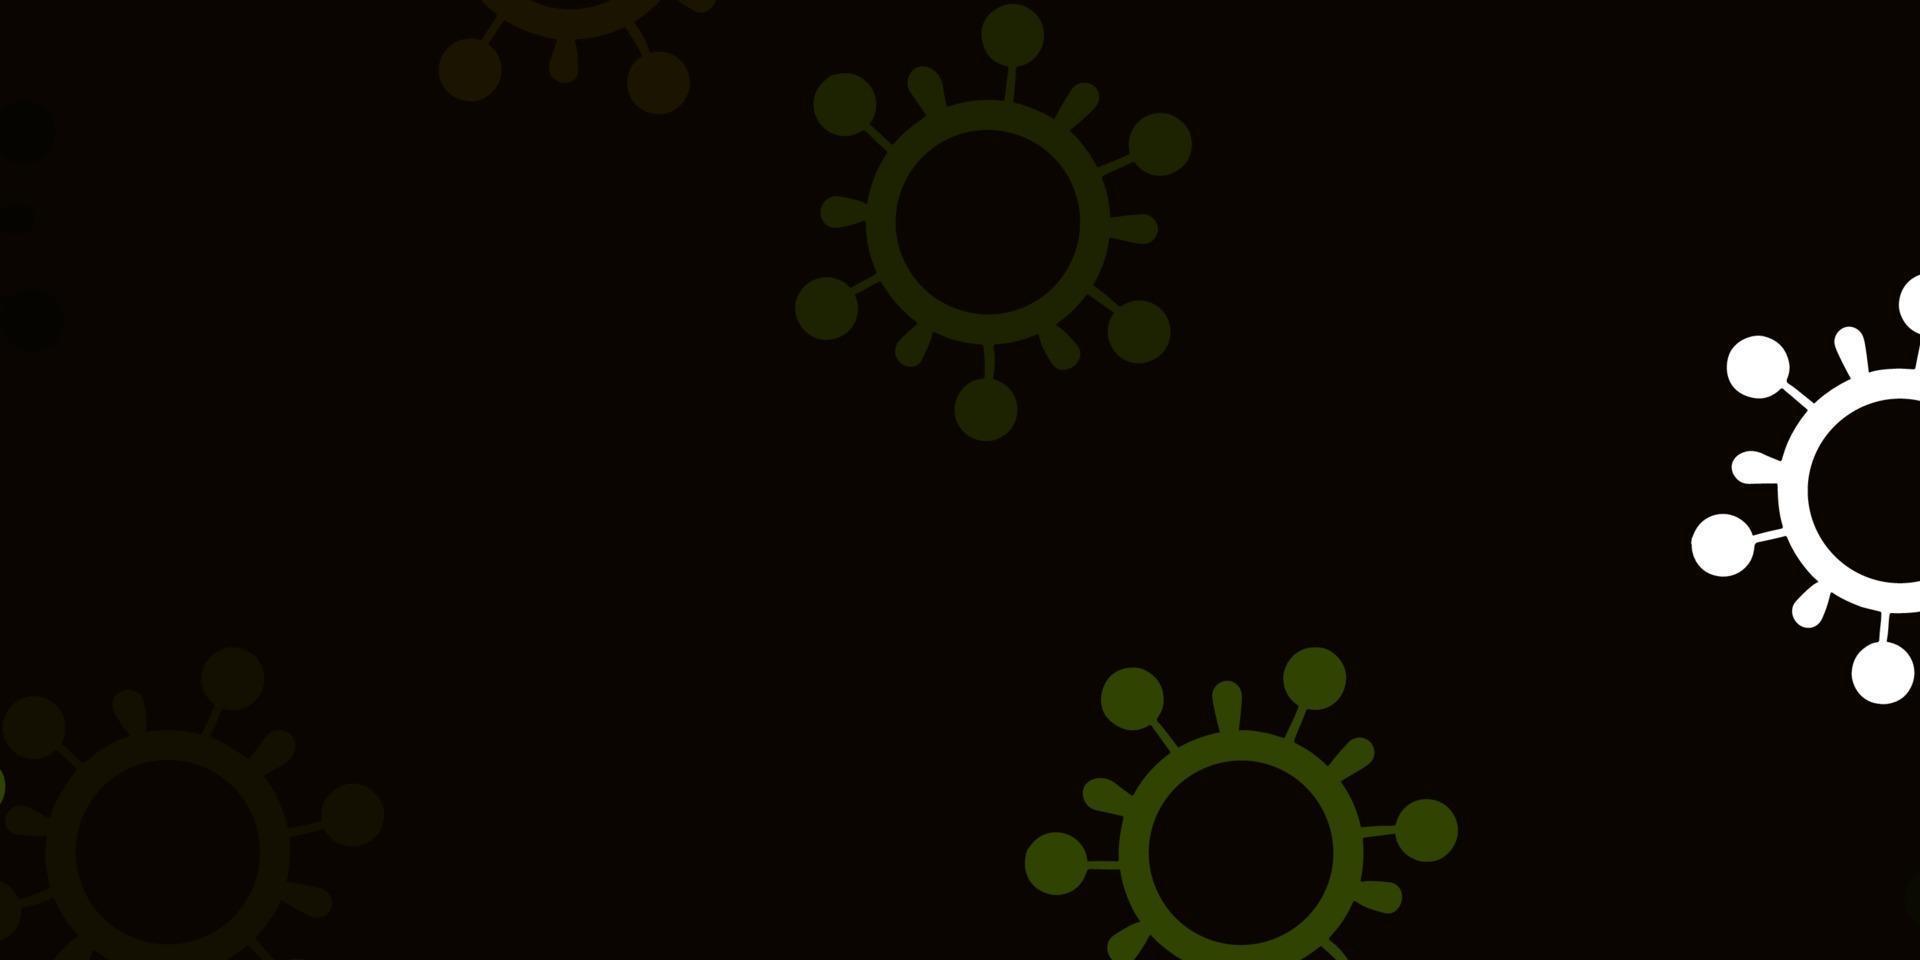 texture vecteur vert clair, jaune avec symboles de la maladie.